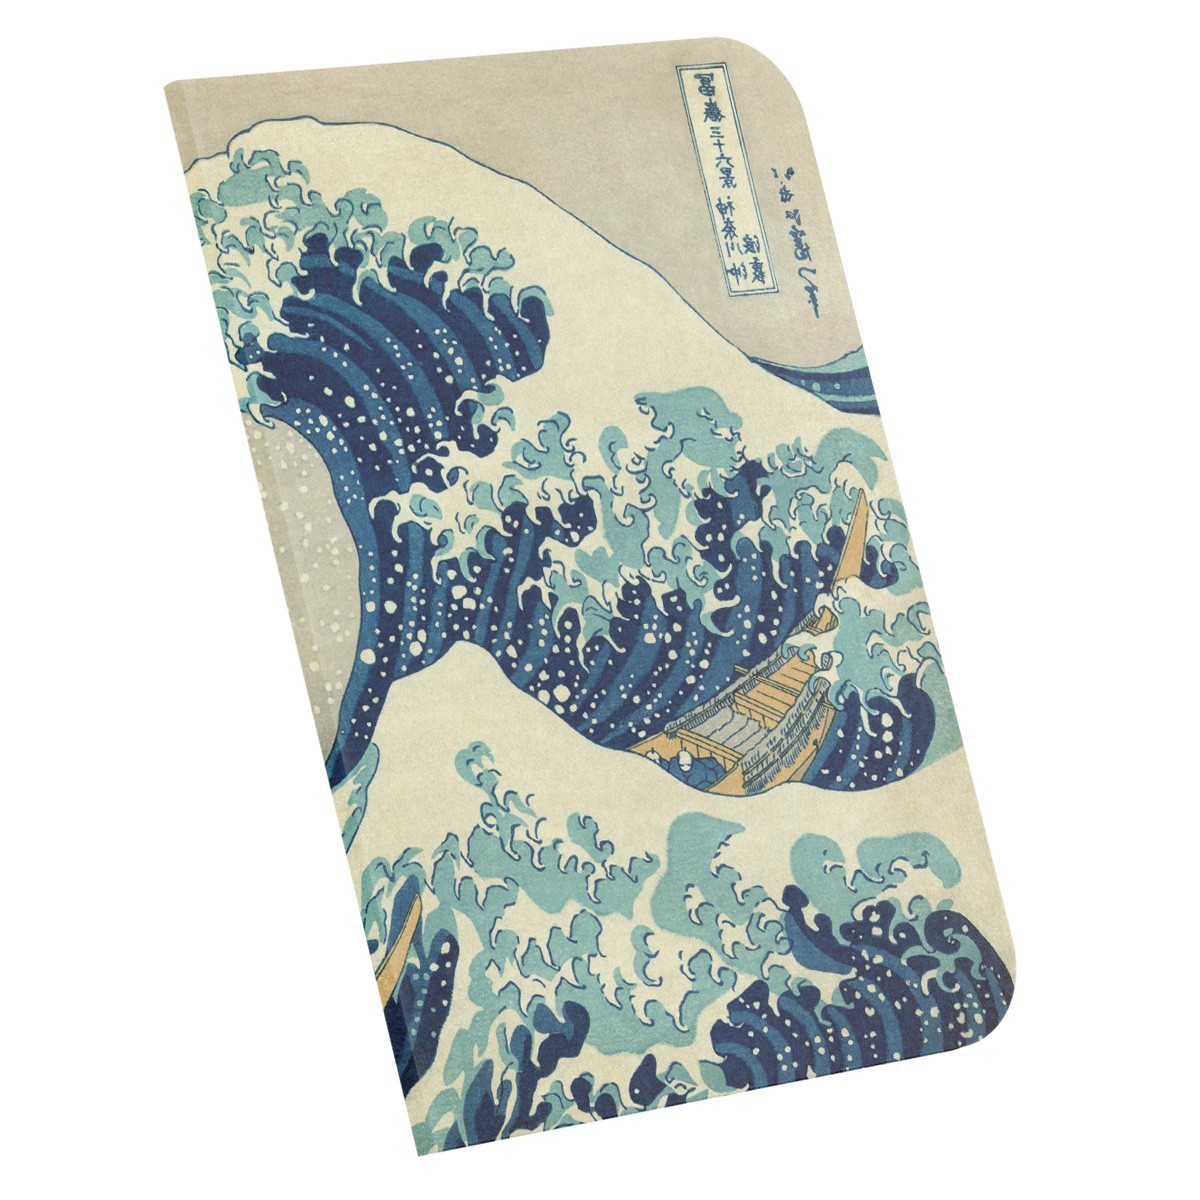 The Great Wave off Kanagawa / Hokusai, 1829-32 / A4 Defter -5